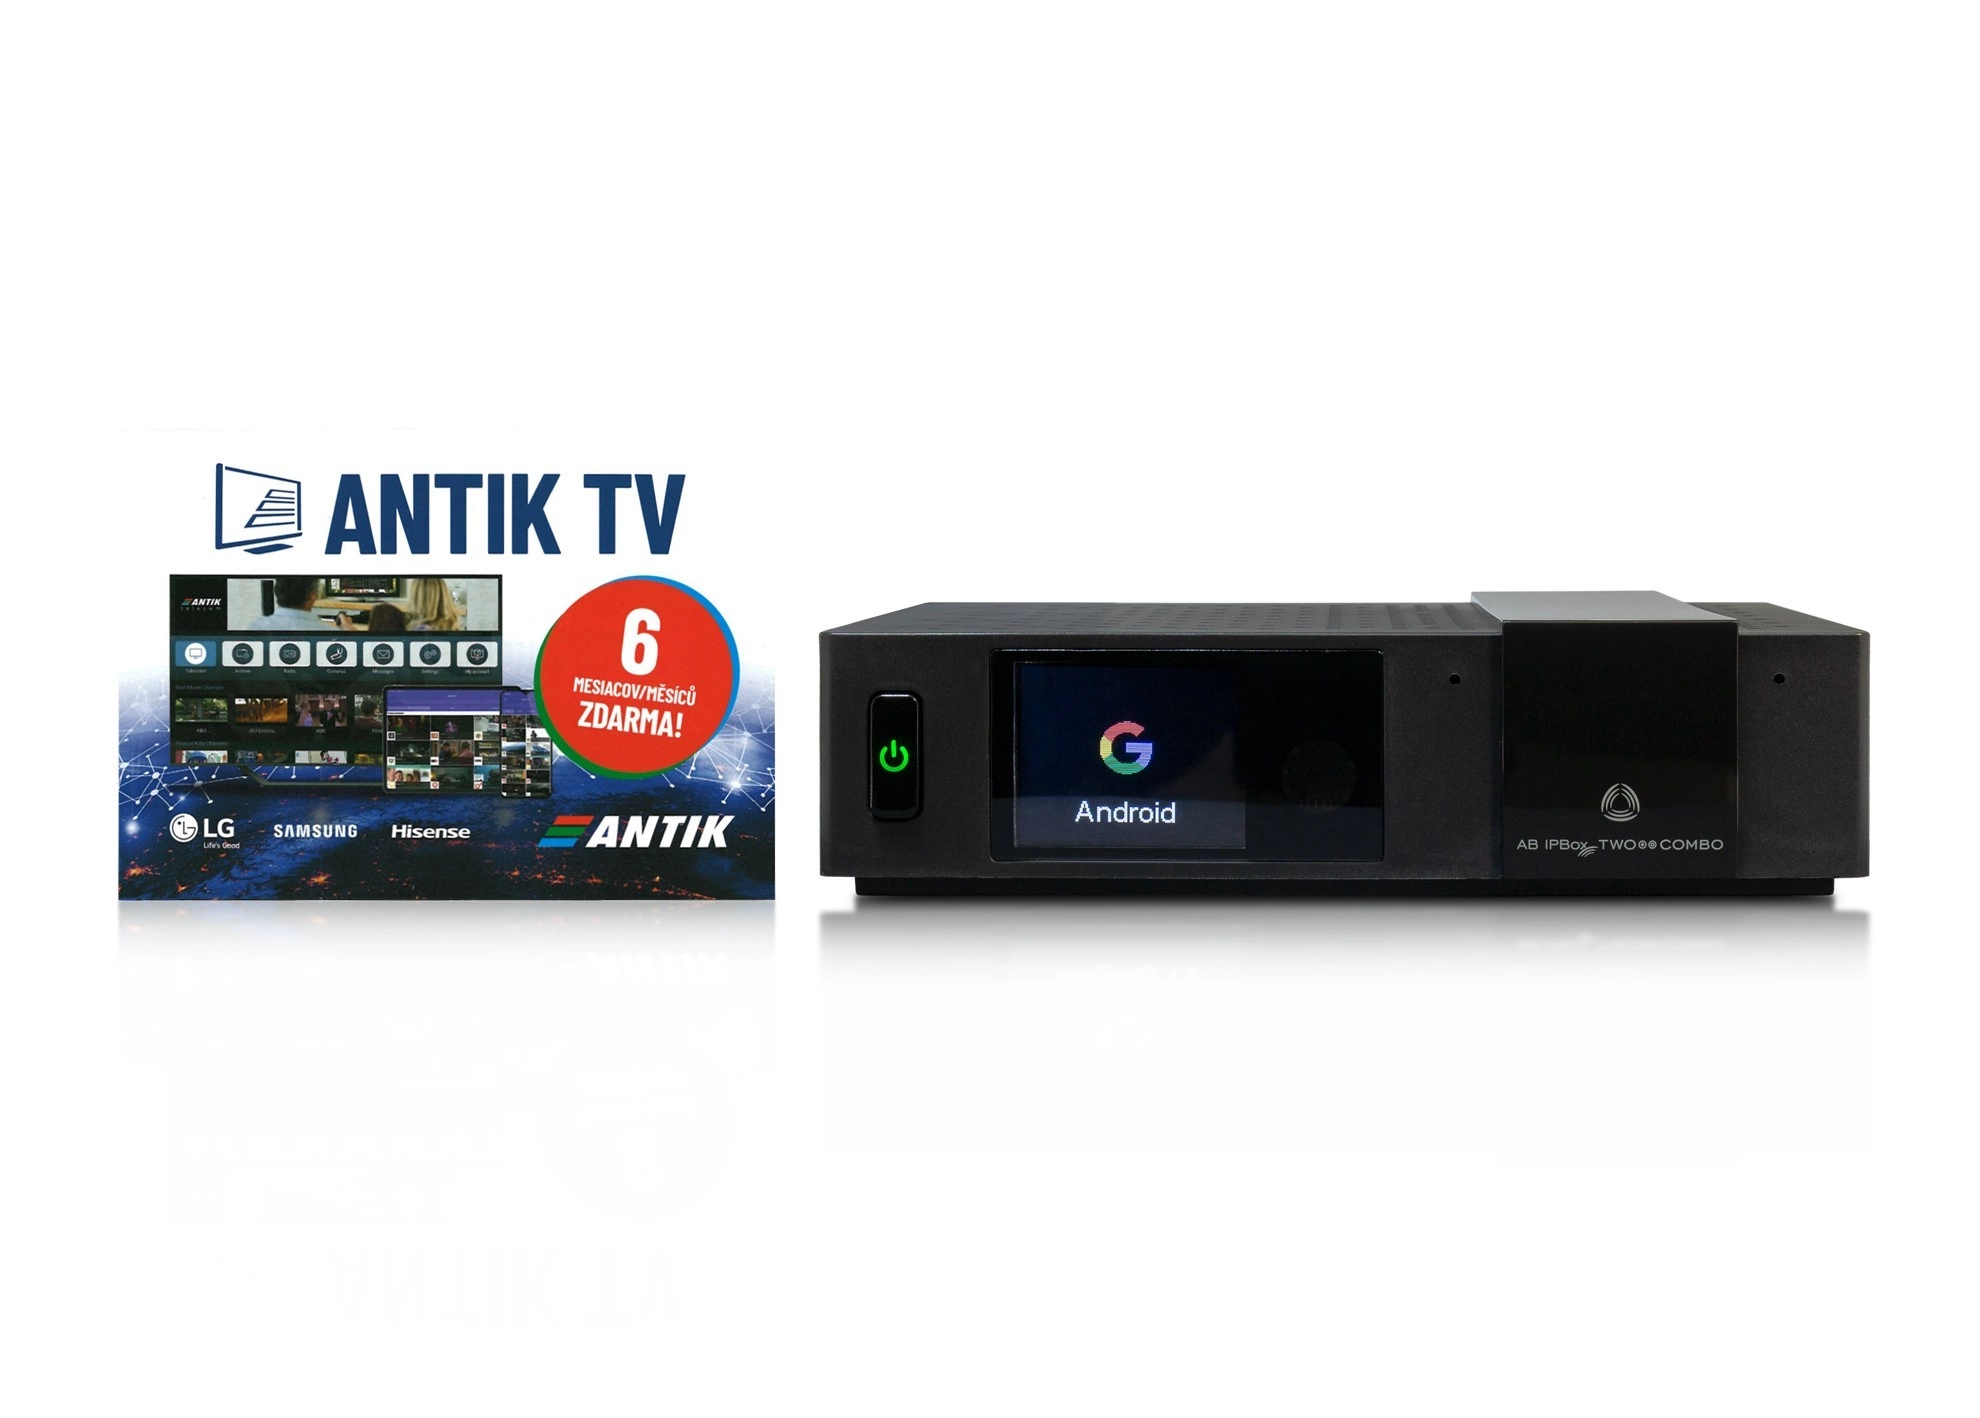 AB IPBox TWO Combo (DVB-S2X+T2/T/C) + Antik 6 mes